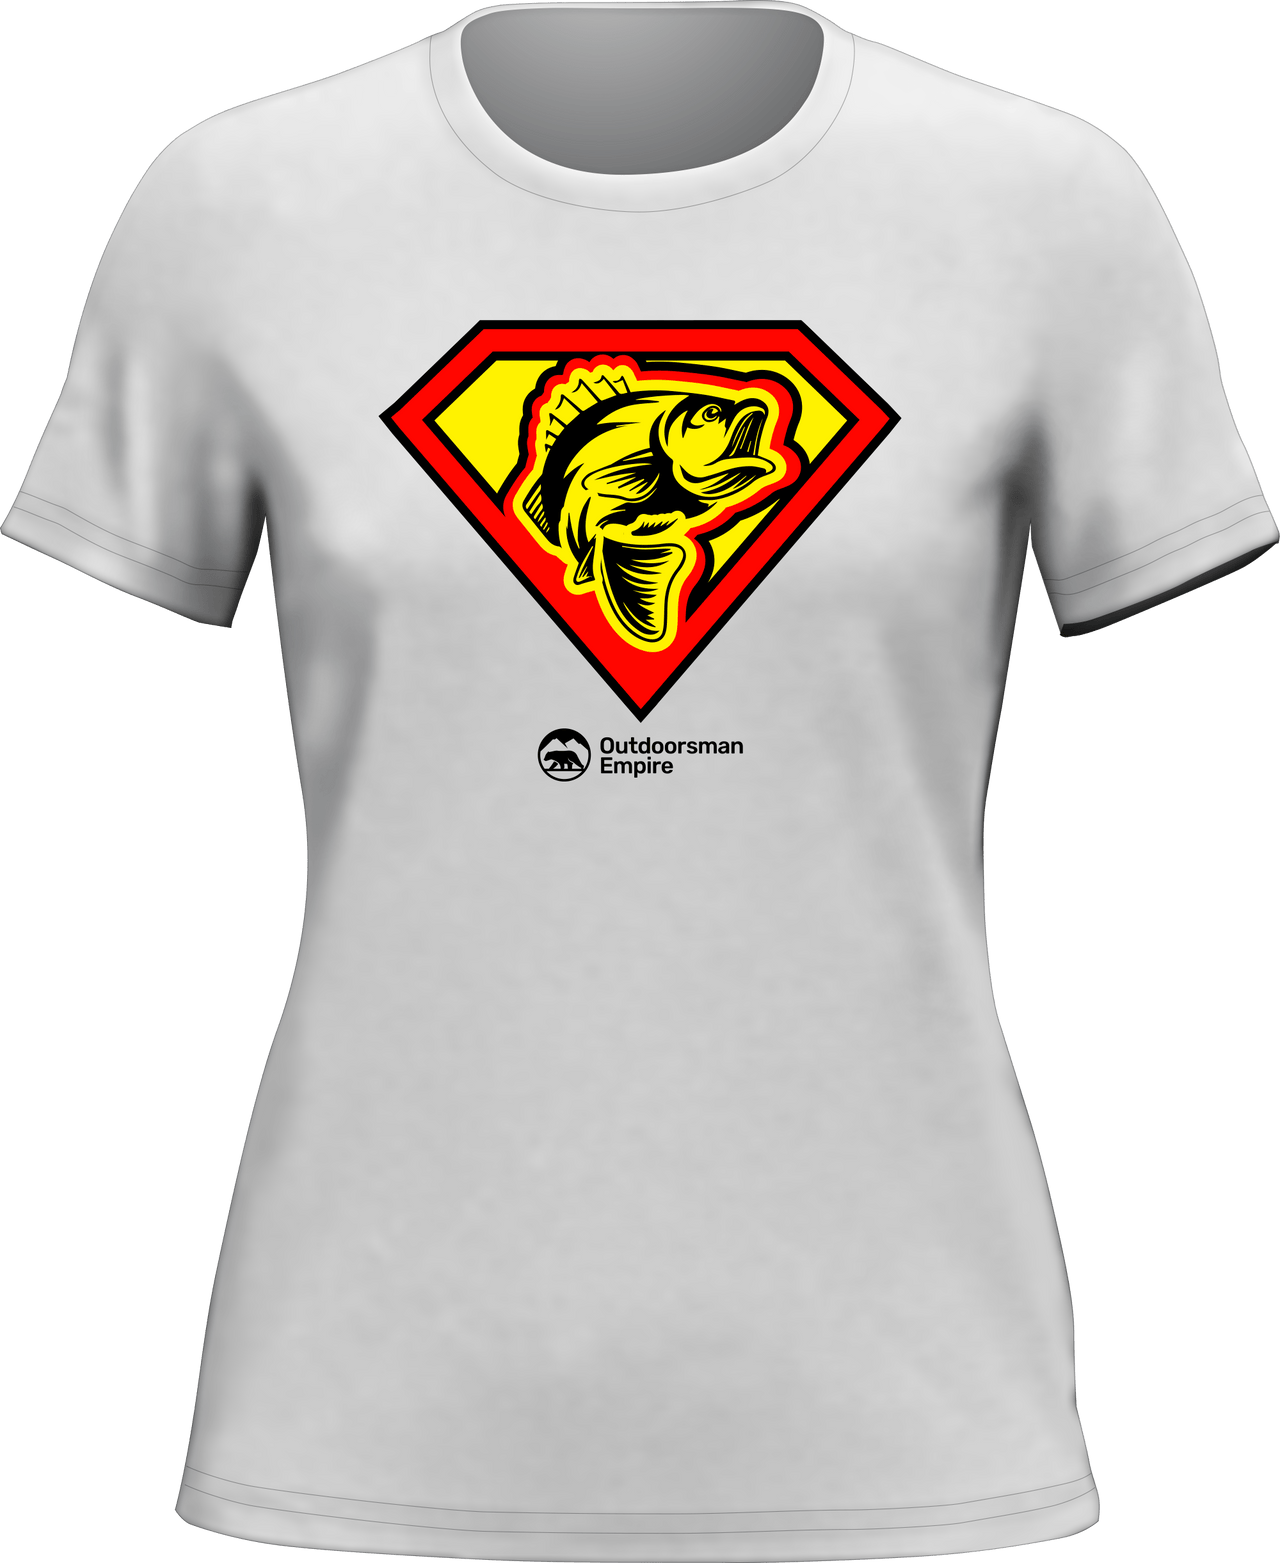 Super Fishing T-Shirt for Women